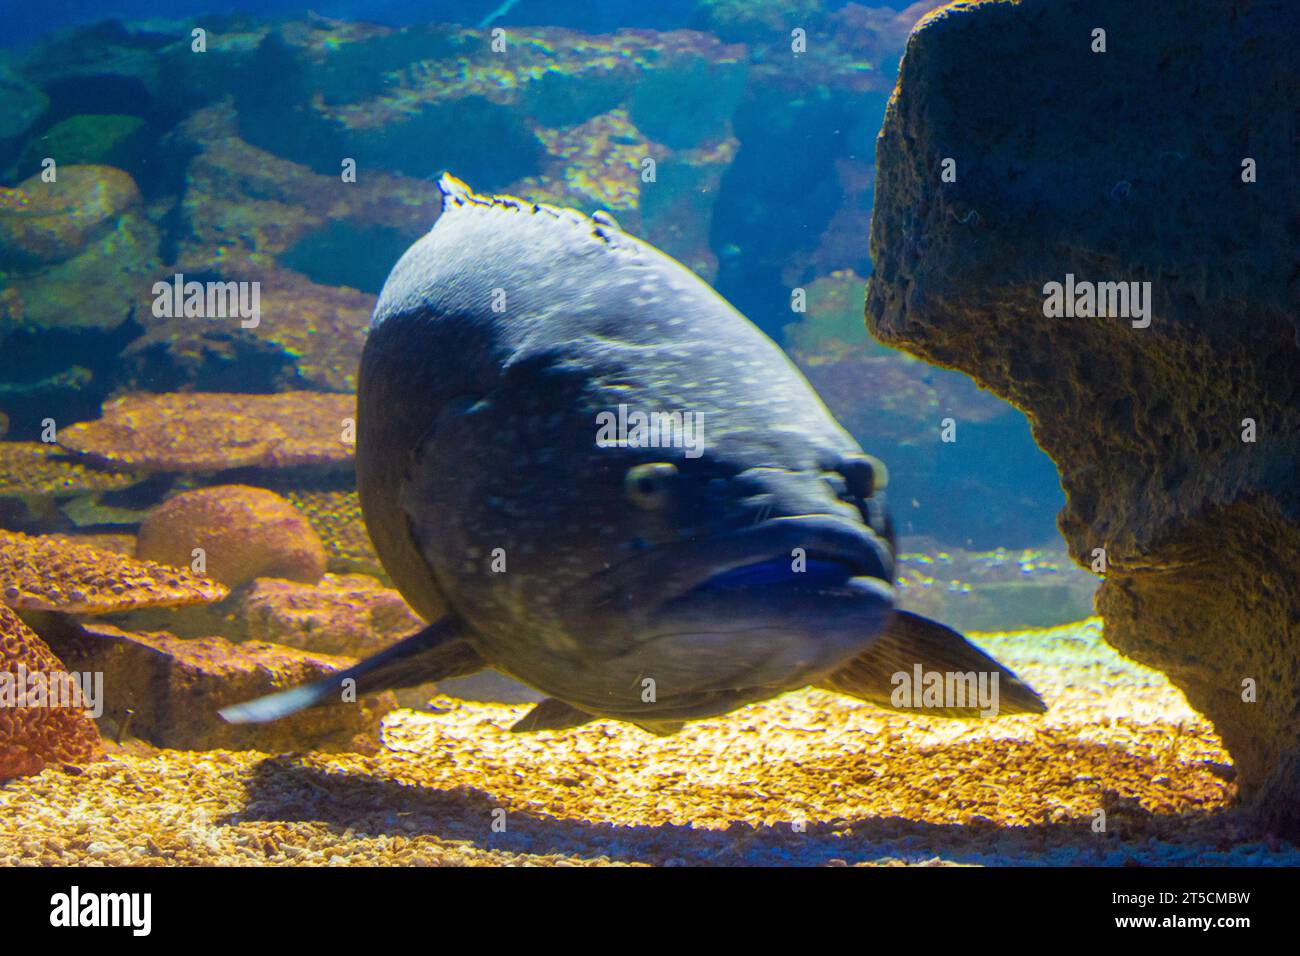 Epinephelus lanceolatus (mérou géant) nageant sous l'eau profonde Banque D'Images